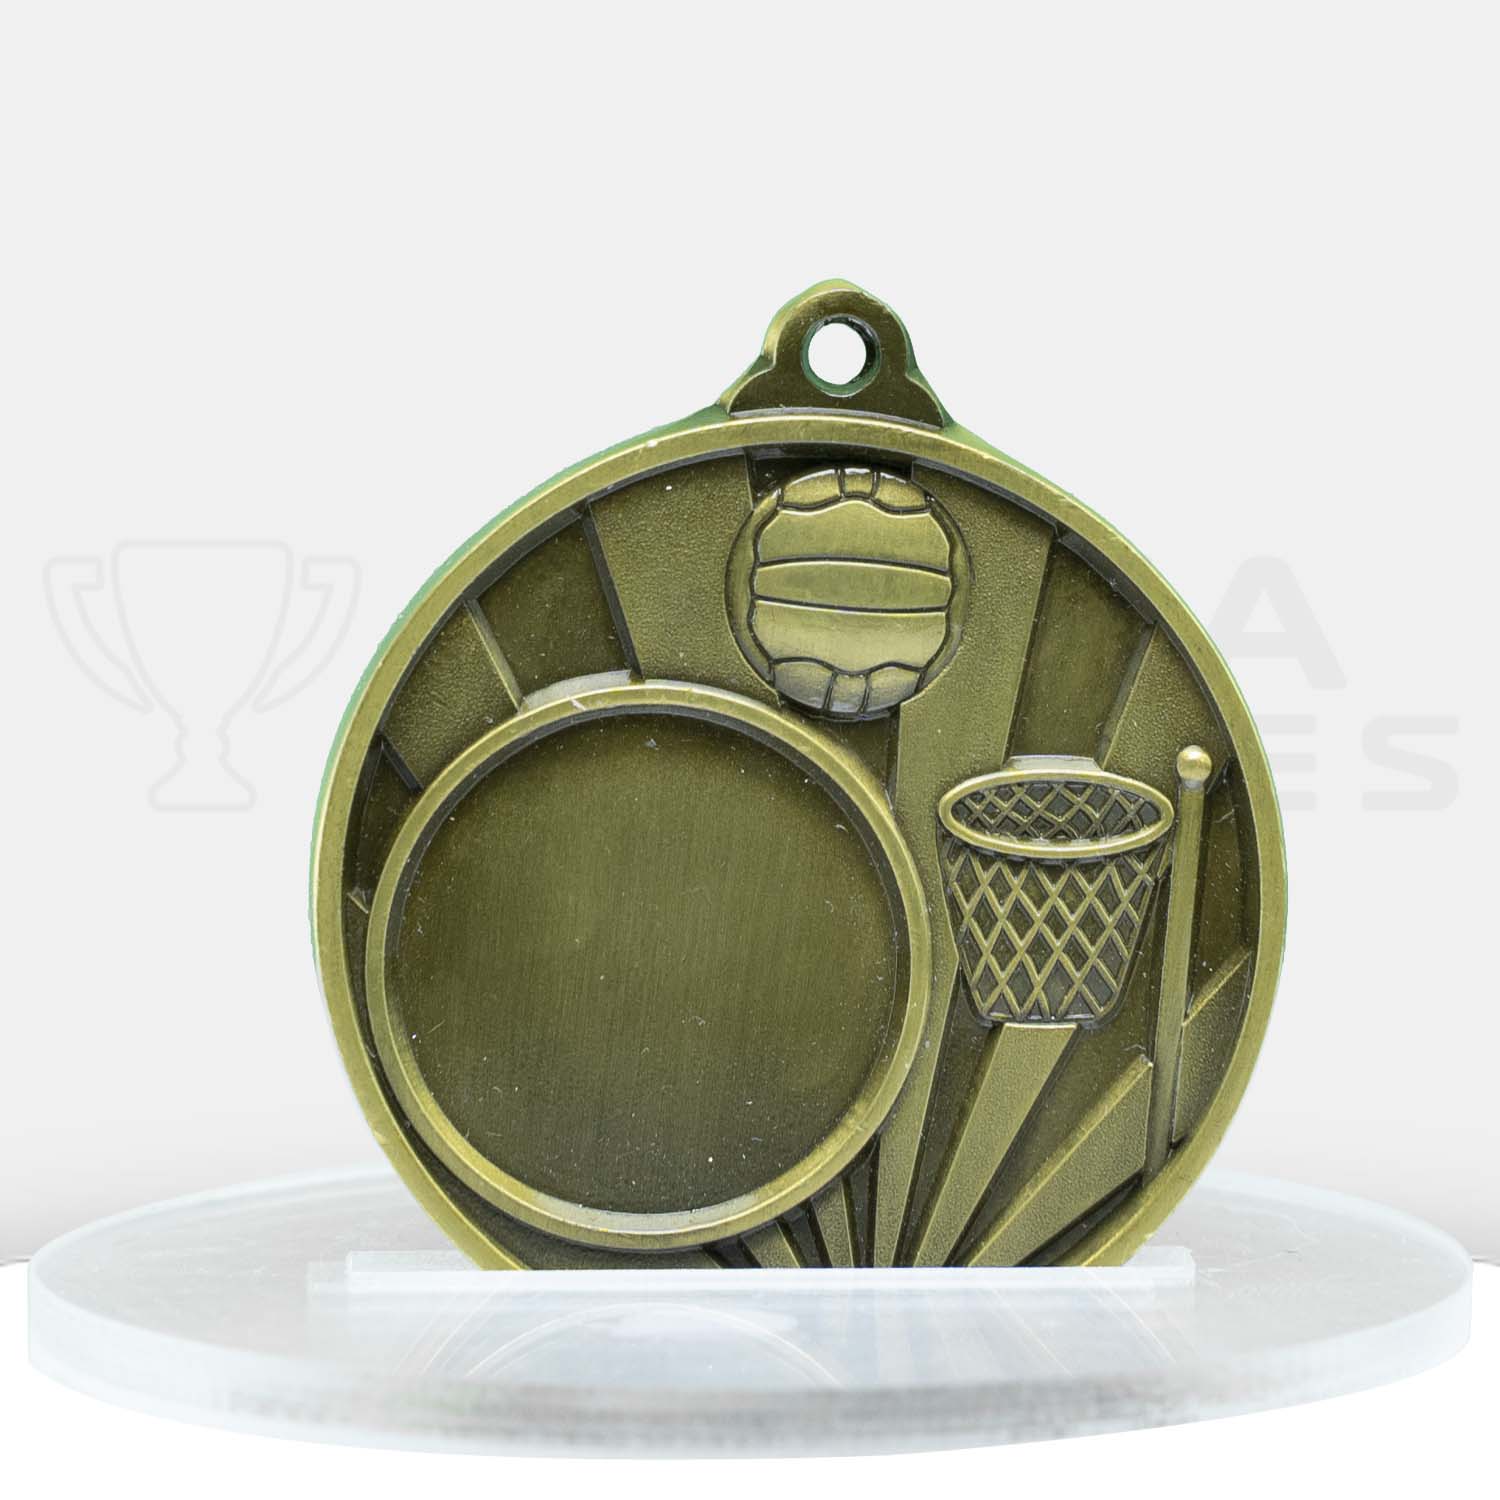 sunrise-medal-netball-25mm-insert-gold-1076c-8g-front